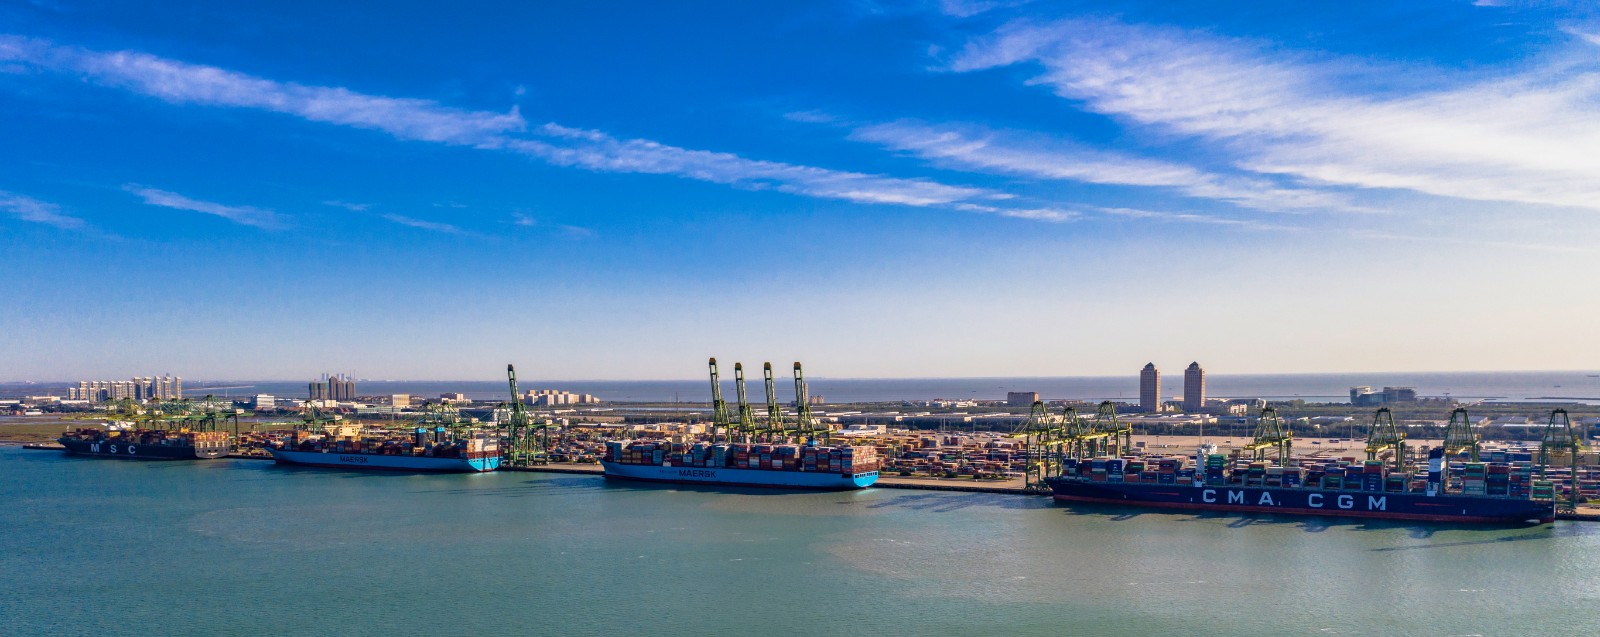 码头无人自动化改造全流程实船系统测试获成功之后,天津港集团再传